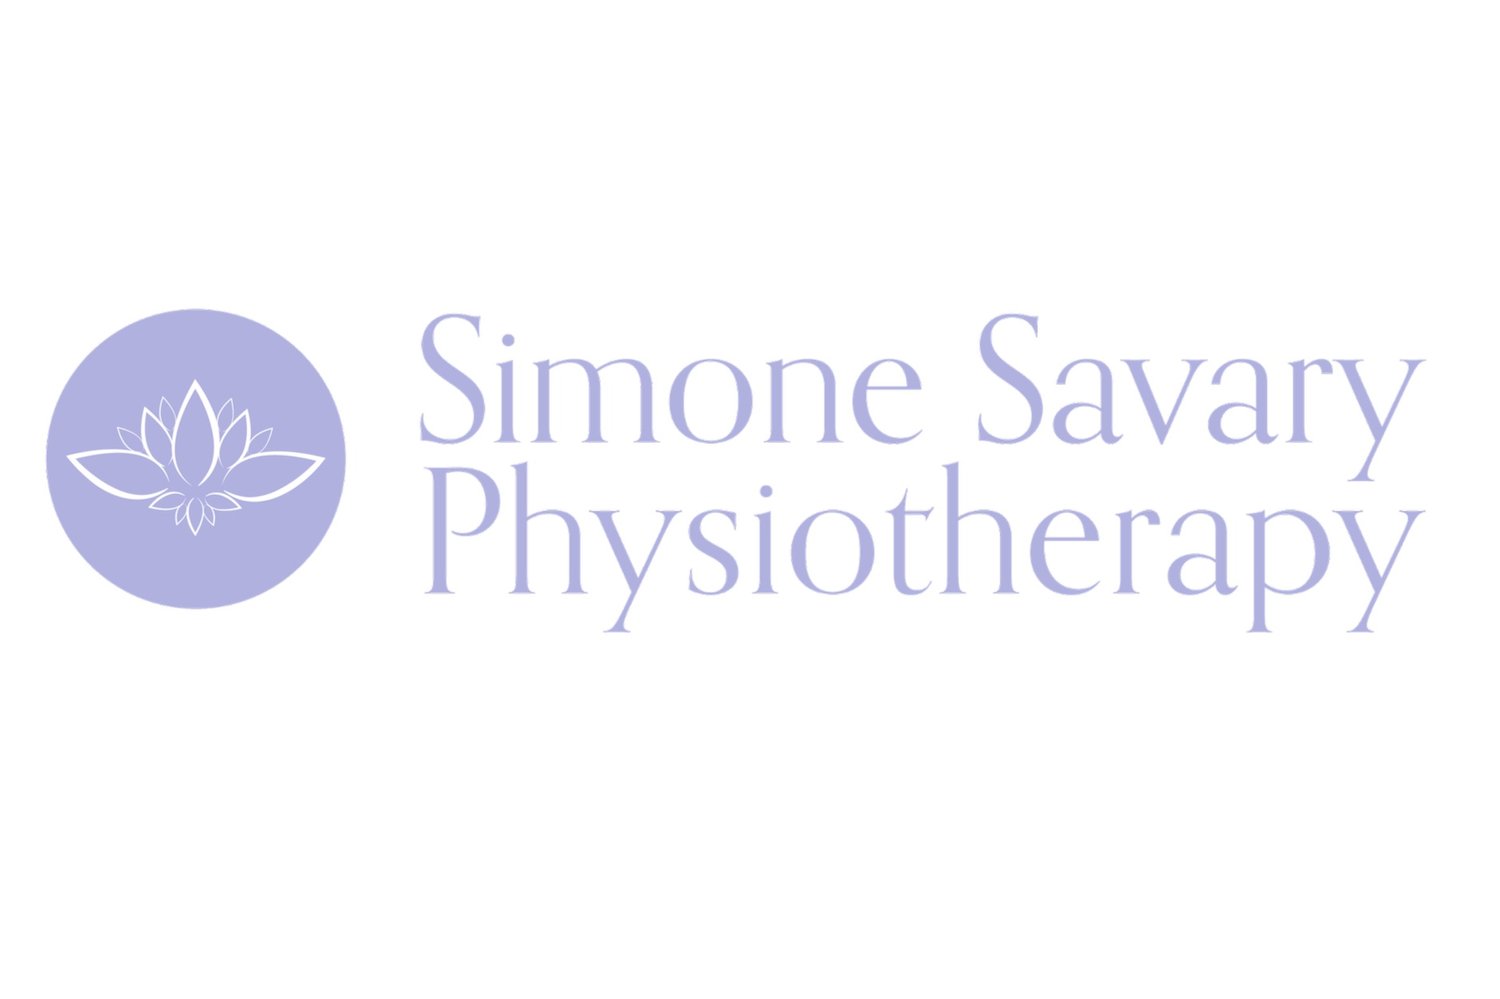 Simone Savary Physiotherapy